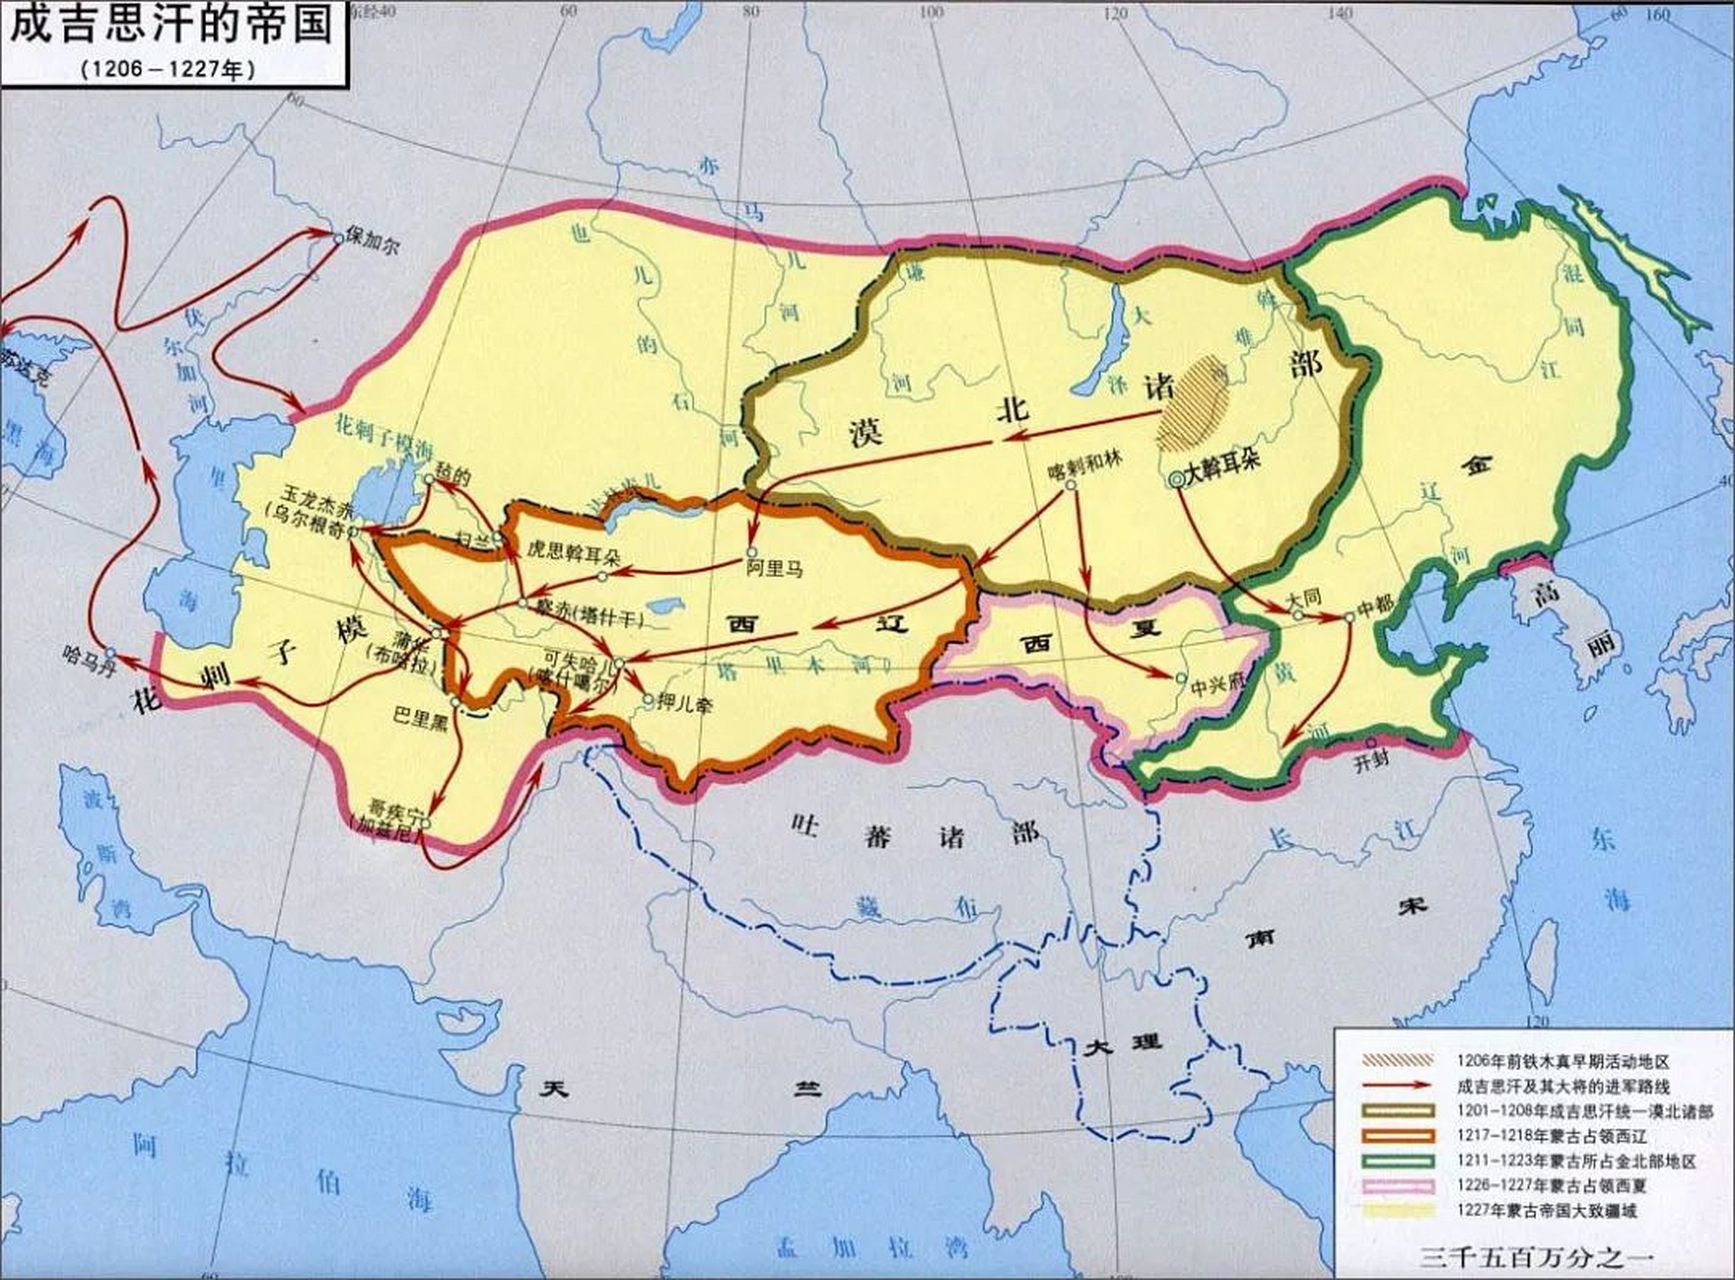 世界历史上领土面积最大的十大帝国如下: 第一,蒙古帝国:4200万k㎡ 第